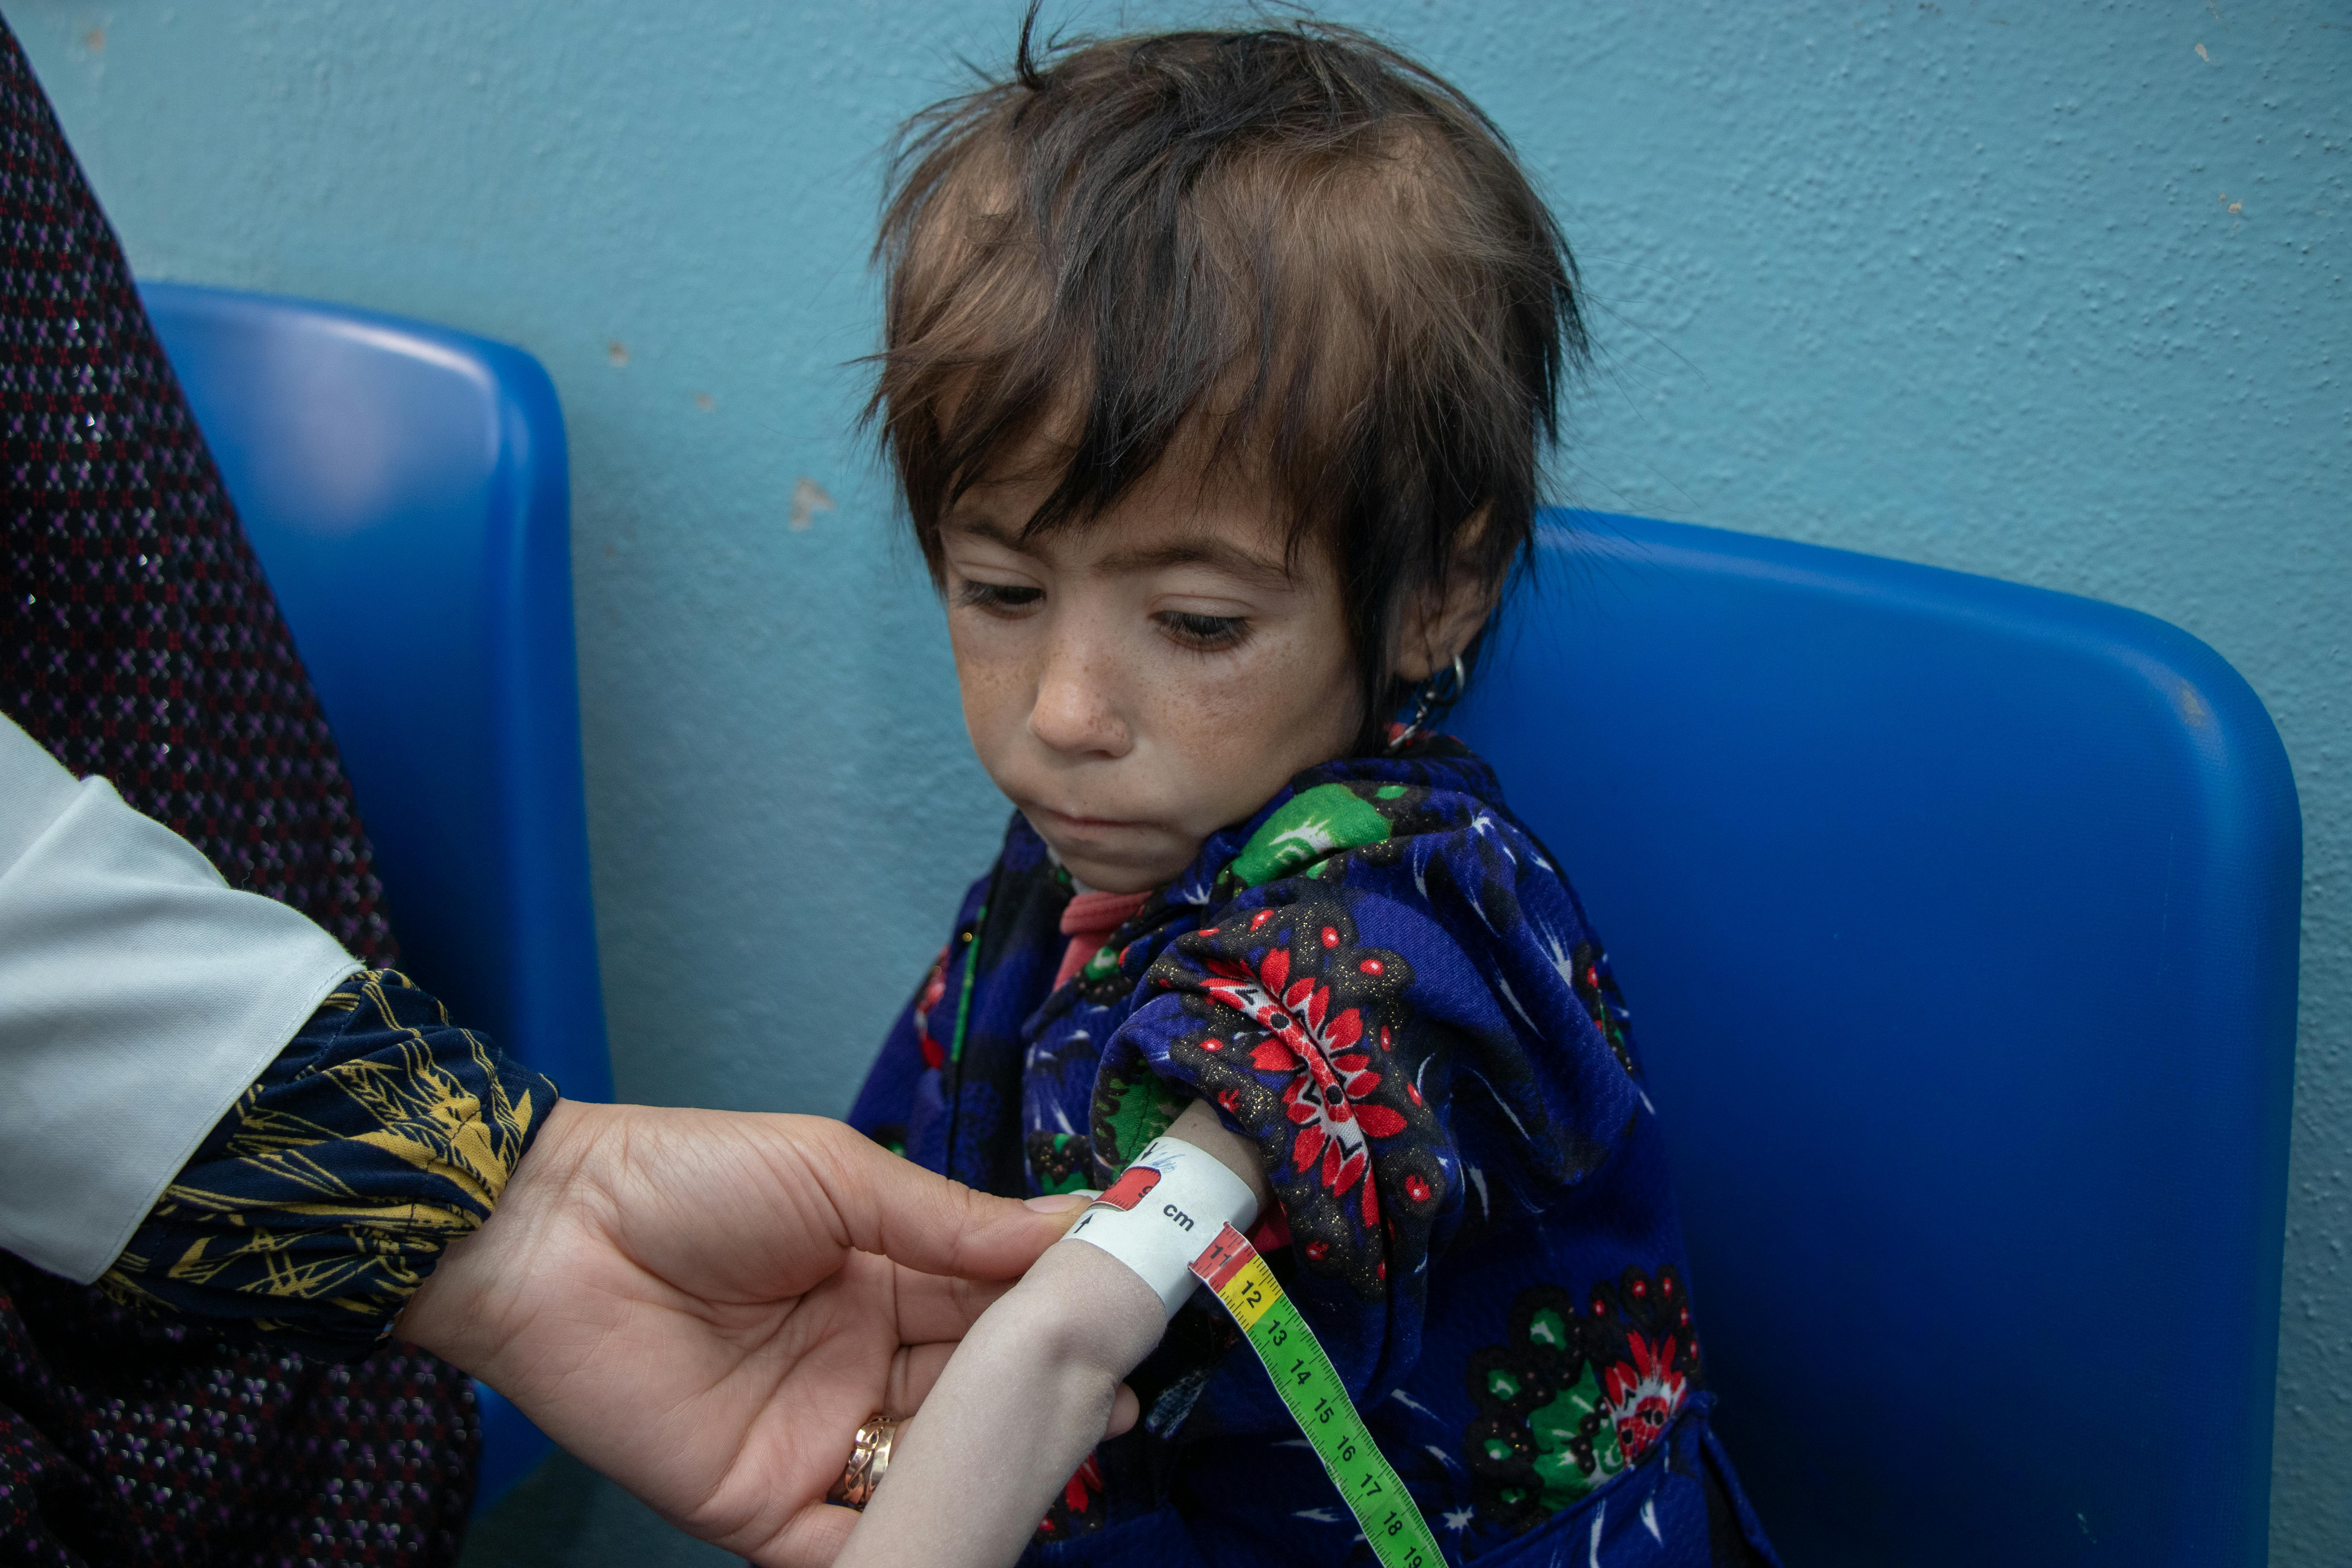 "Braccia sottili come un manico di scopa": la piccola Parwana, gravemente malnutrita, viene visitata in una clinica ad Herat. Il braccialetto utilizzato, MUAC, conferma lo stato di malnutrizione acuta grave